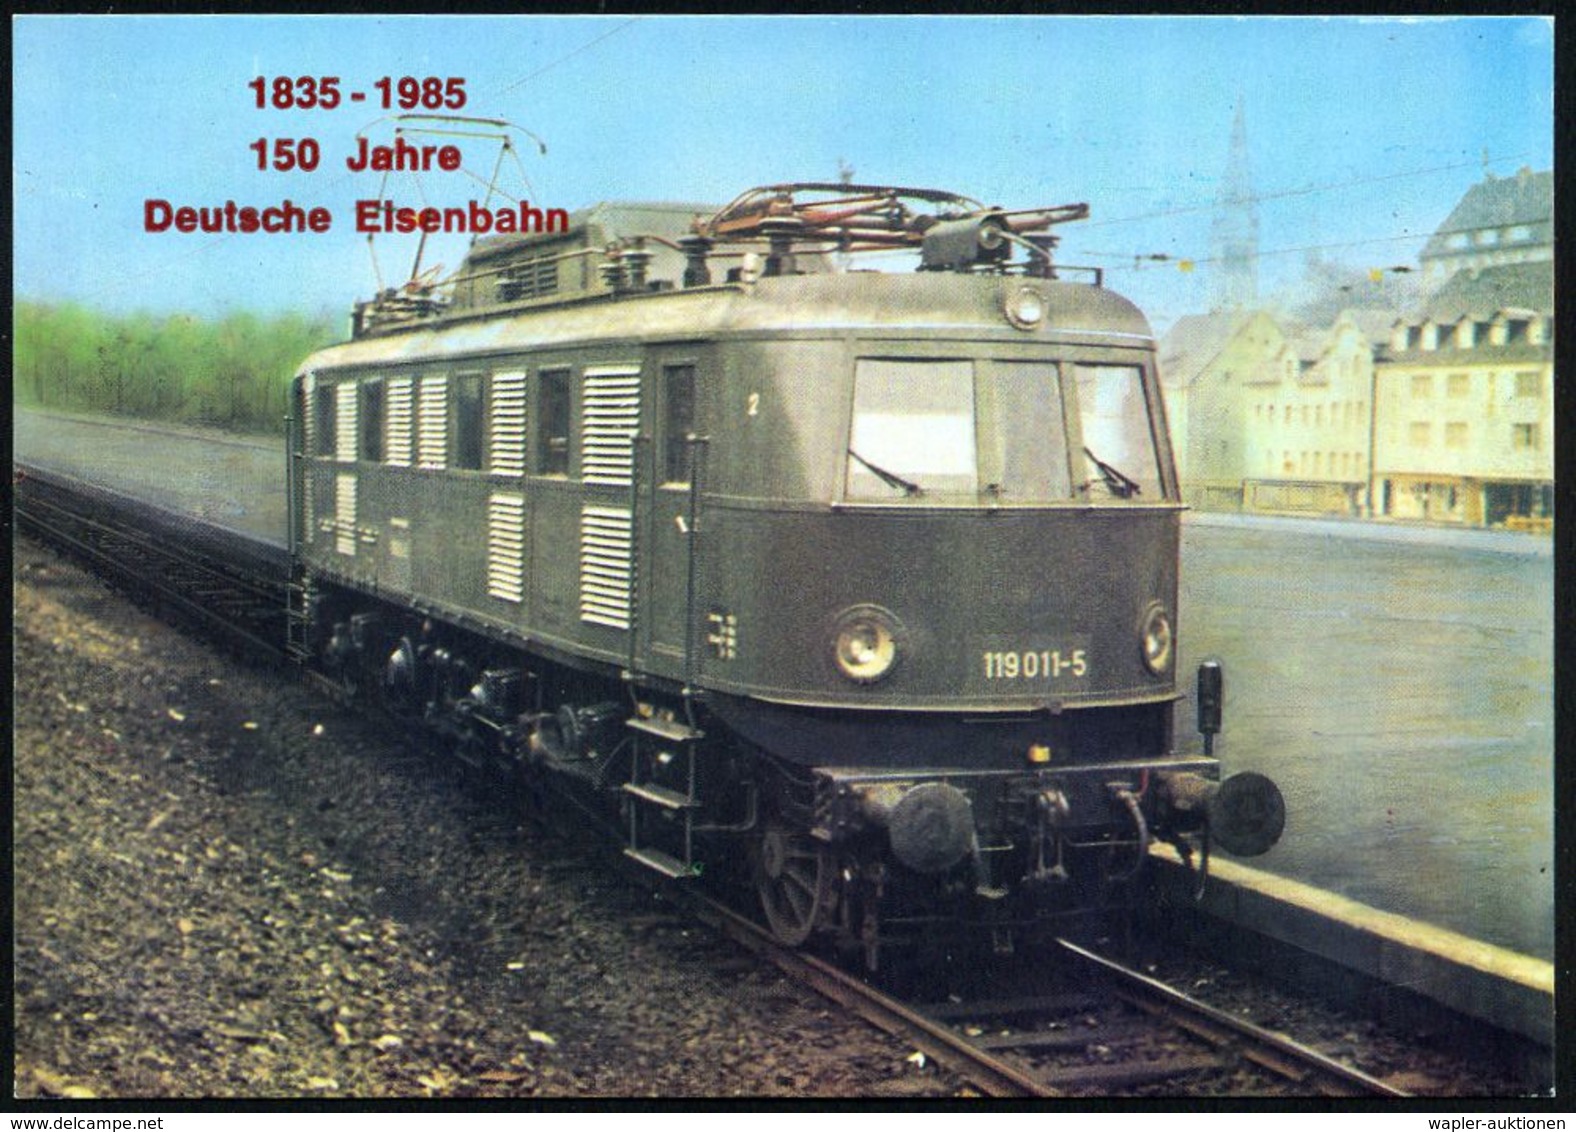 EISENBAHN-JUBILÄEN & SONDERFAHRTEN : B.R.D. 1985 PP 25 Pf. + 30 Pf. Burgen: Schnellzug-E-Lok Bundesbahn, Baureihe 119 (F - Trains